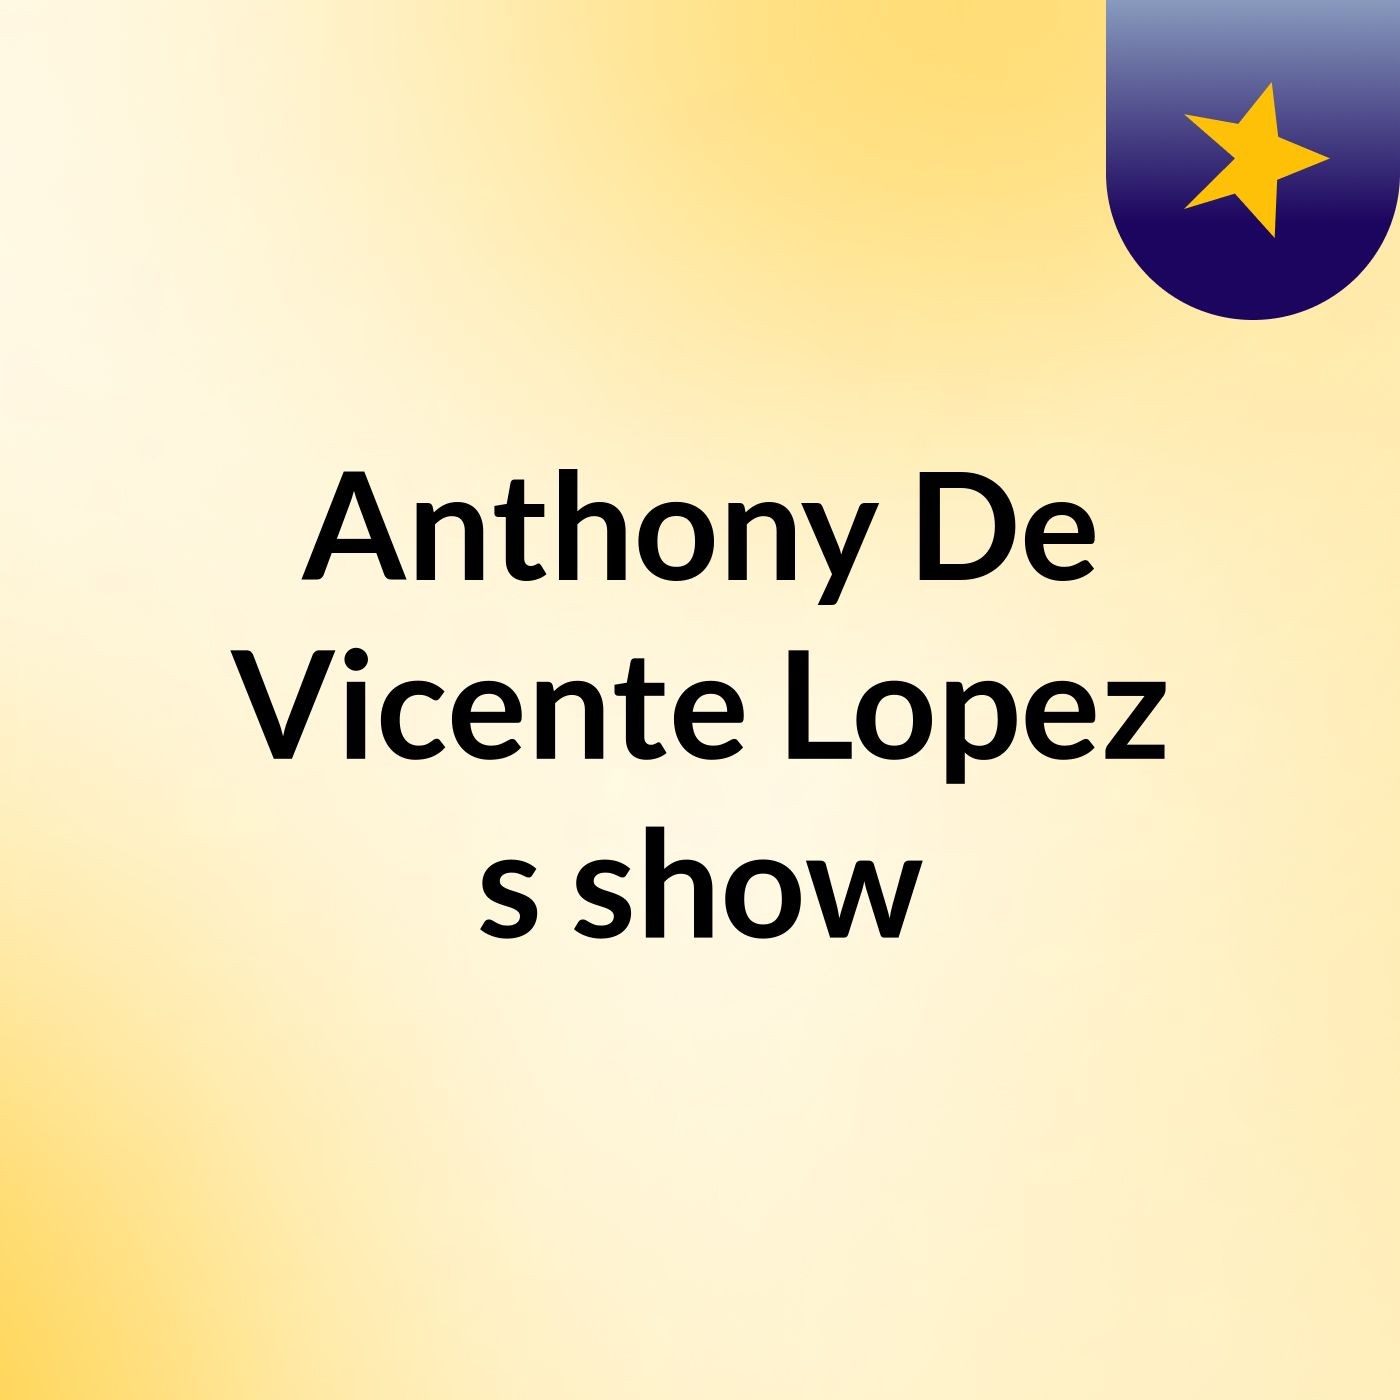 Anthony De Vicente Lopez's show